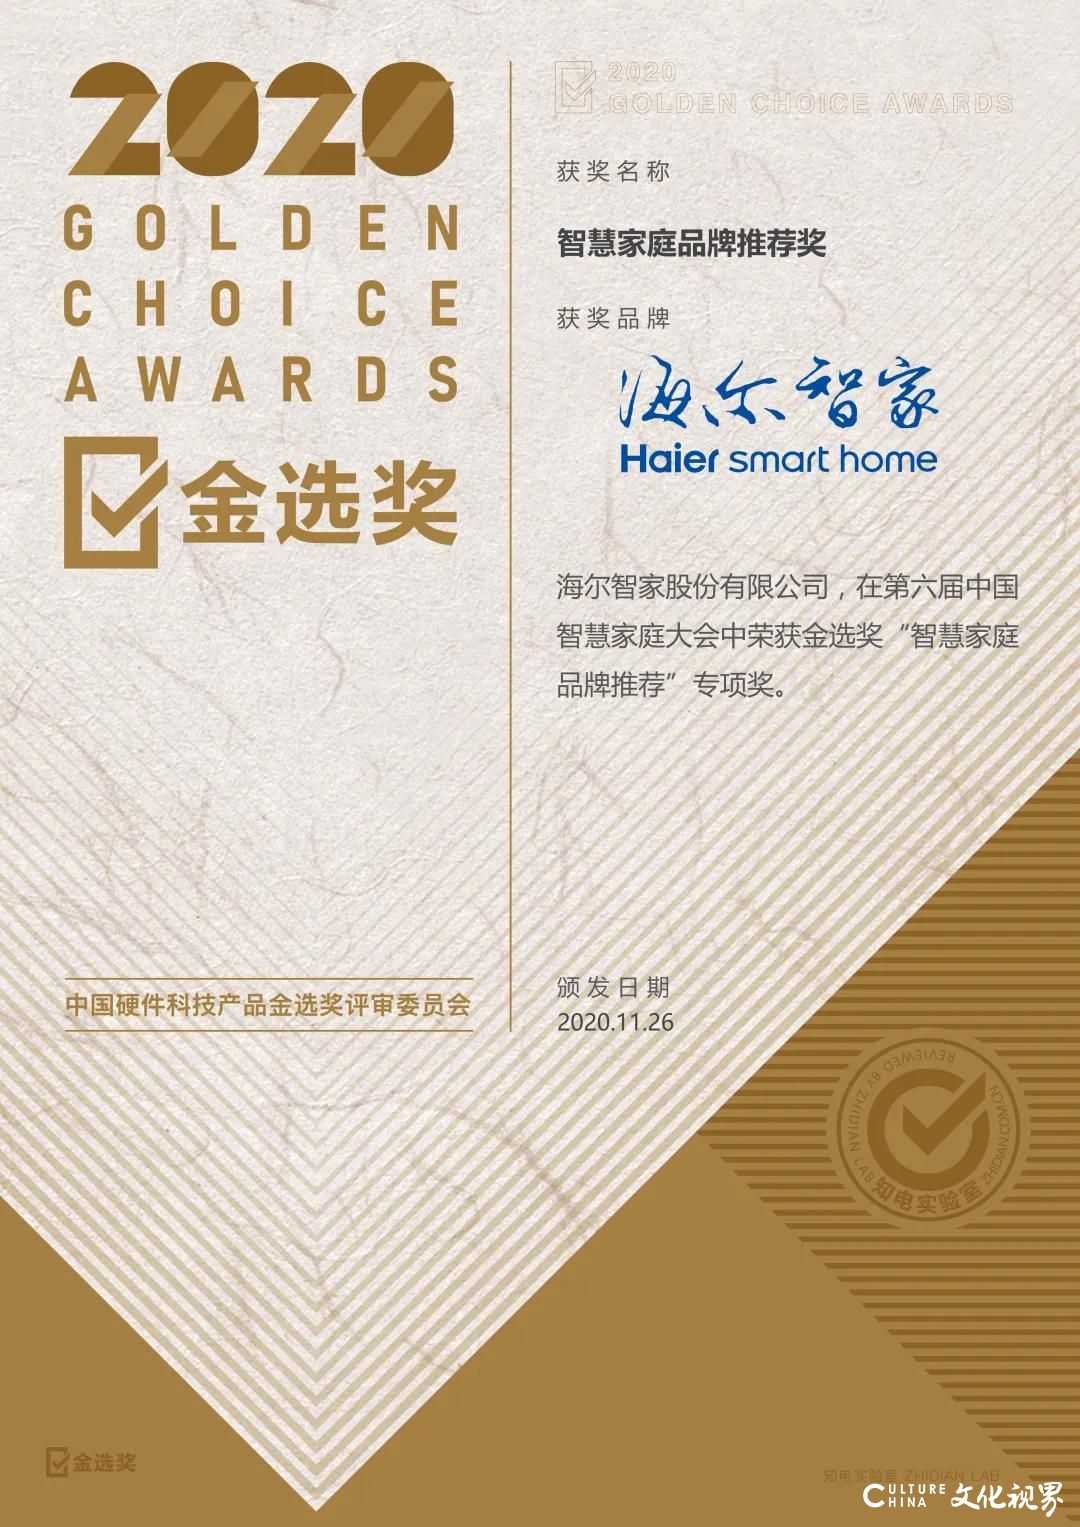 第六届中国智慧家庭大会召开，海尔囊括“智慧家庭品牌推荐”“智慧生态场景引领”两项大奖